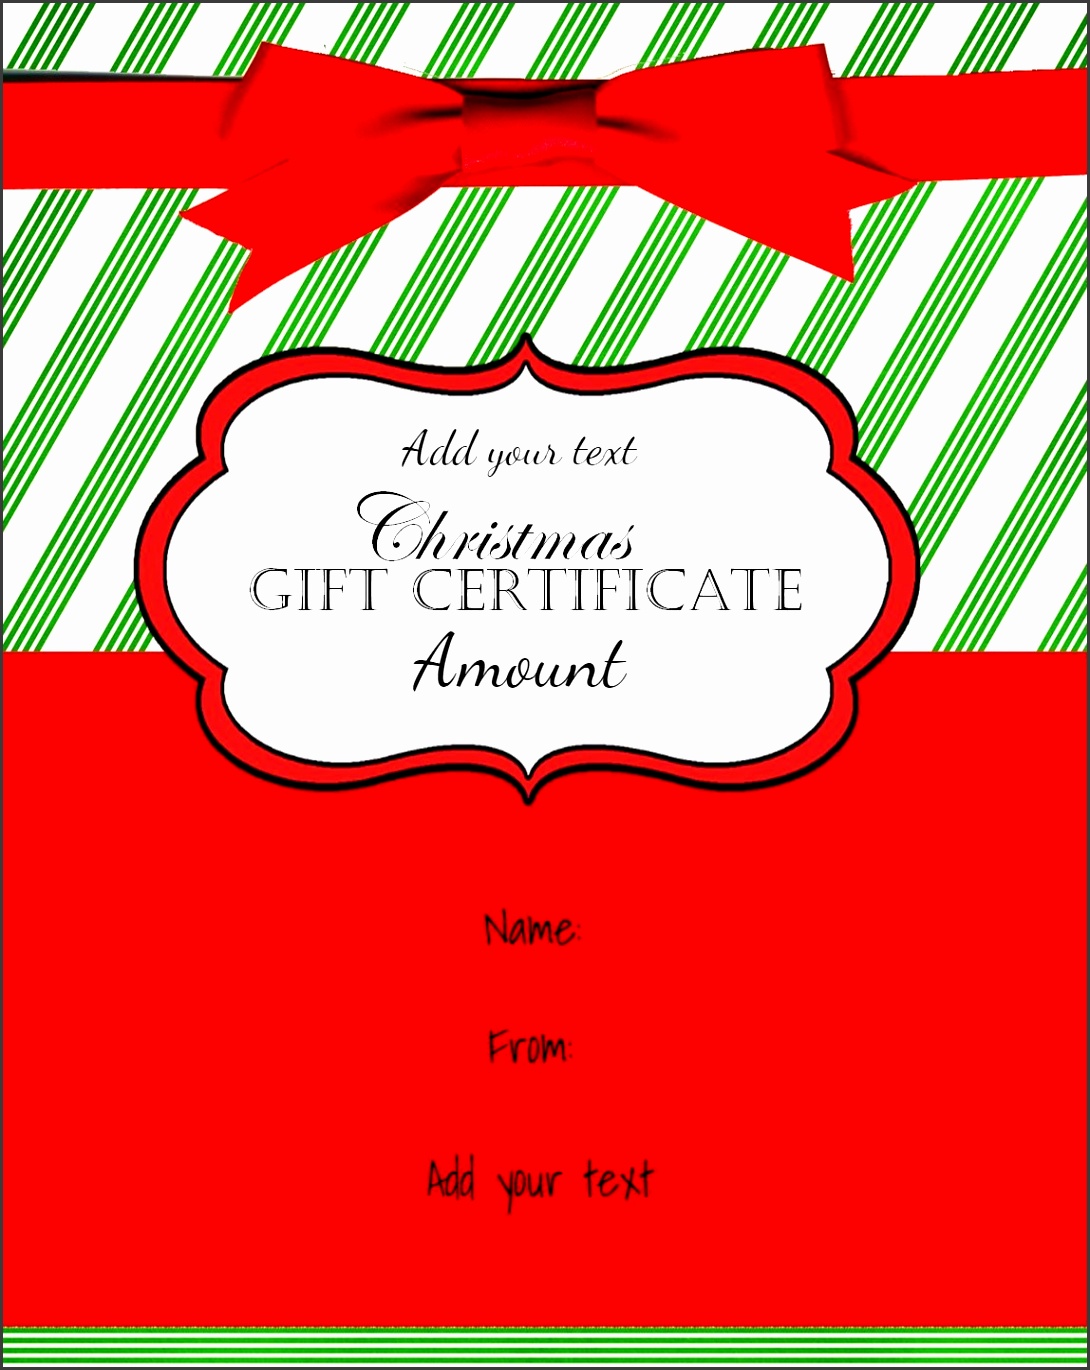 5-christmas-gift-voucher-template-free-download-sampletemplatess-sampletemplatess